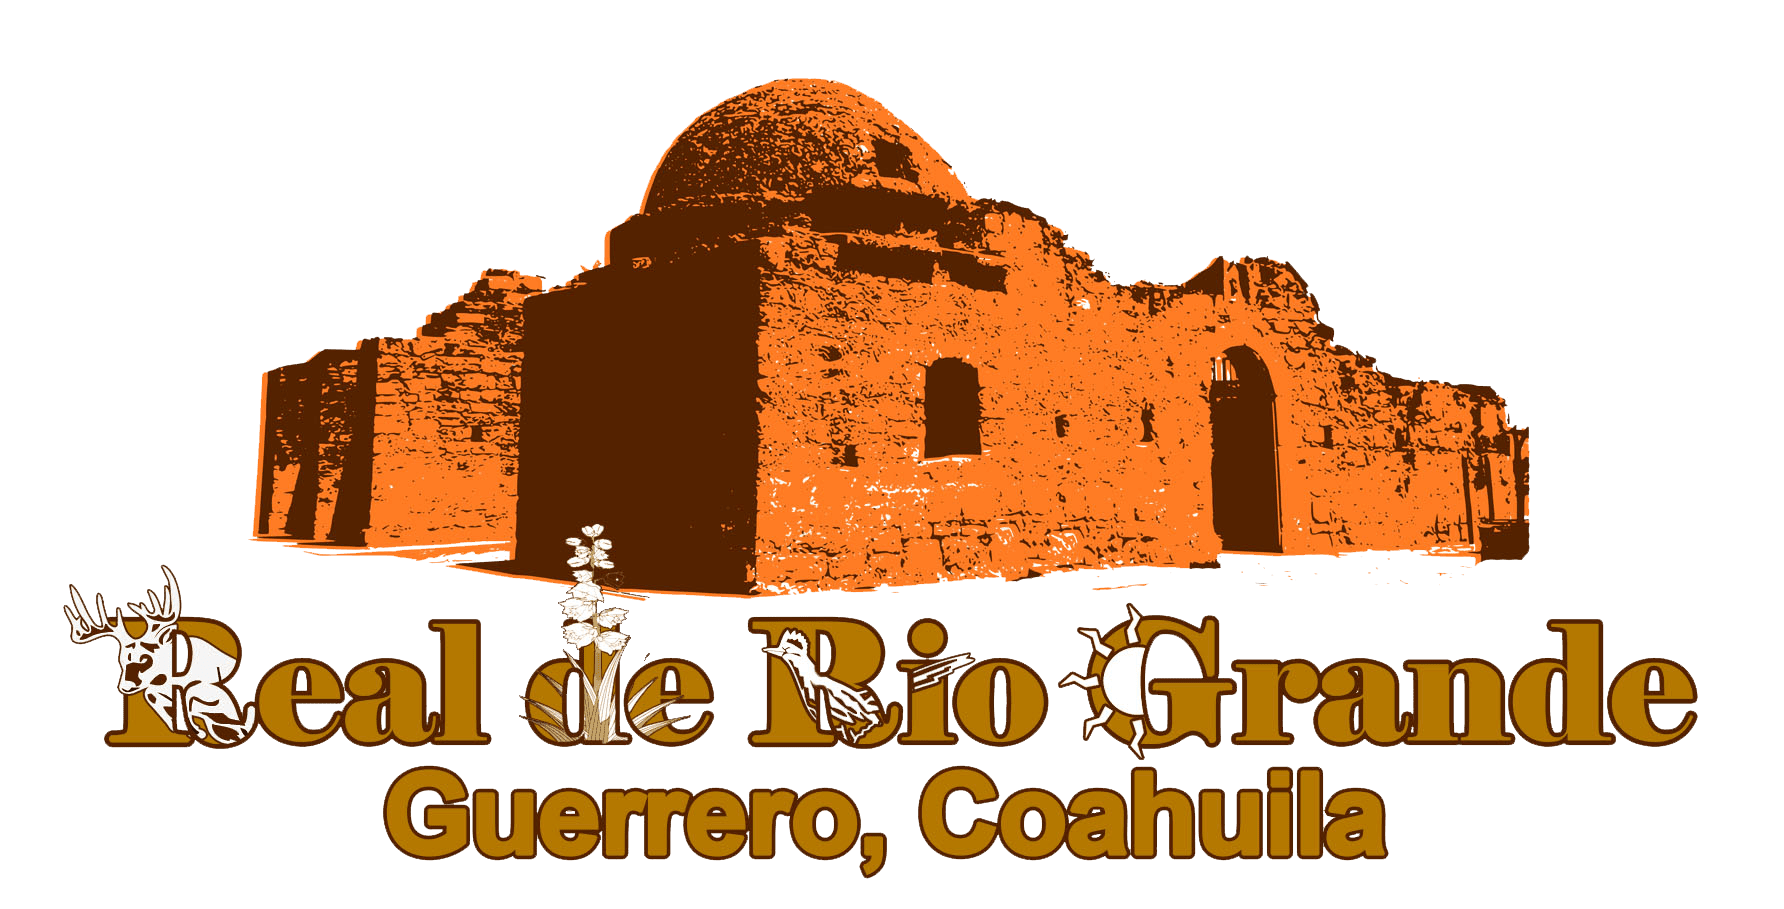 Guerrero el de Coahuila